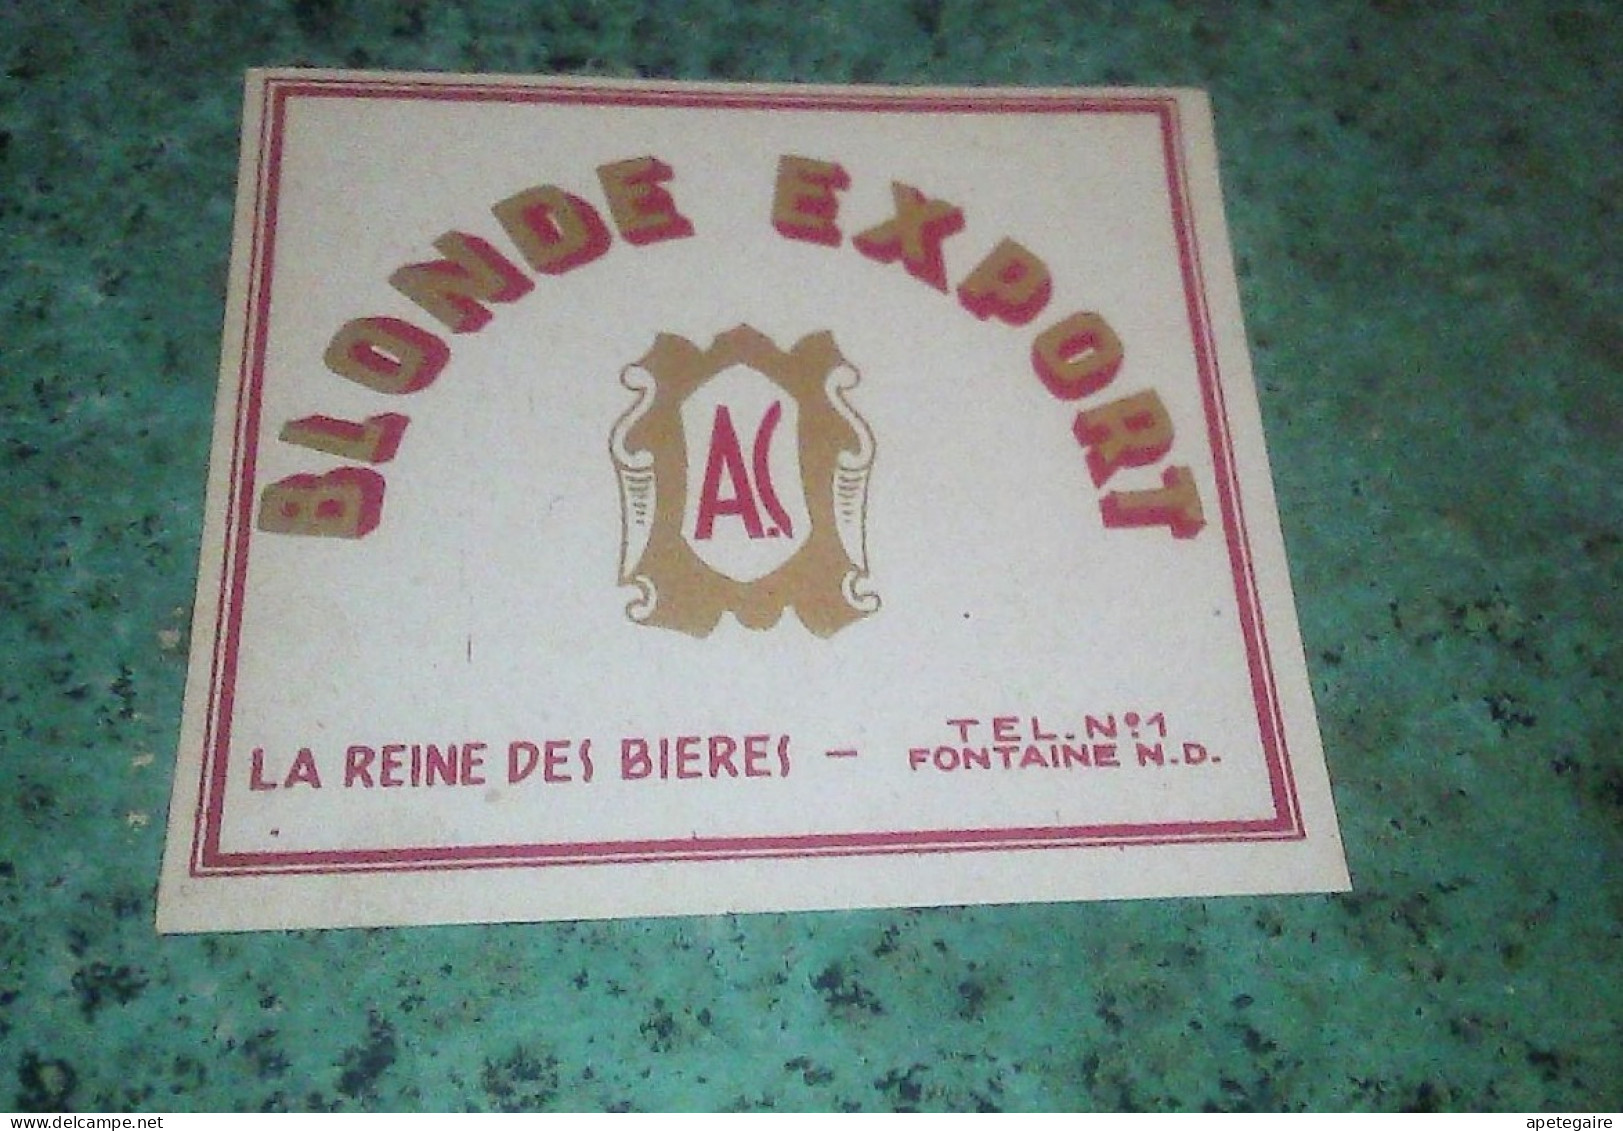 Fontaine Notre-Dame Brasserie A.C.  Ancienne étiquette De Bière Blonde Export La Reine Des Bières - Bière